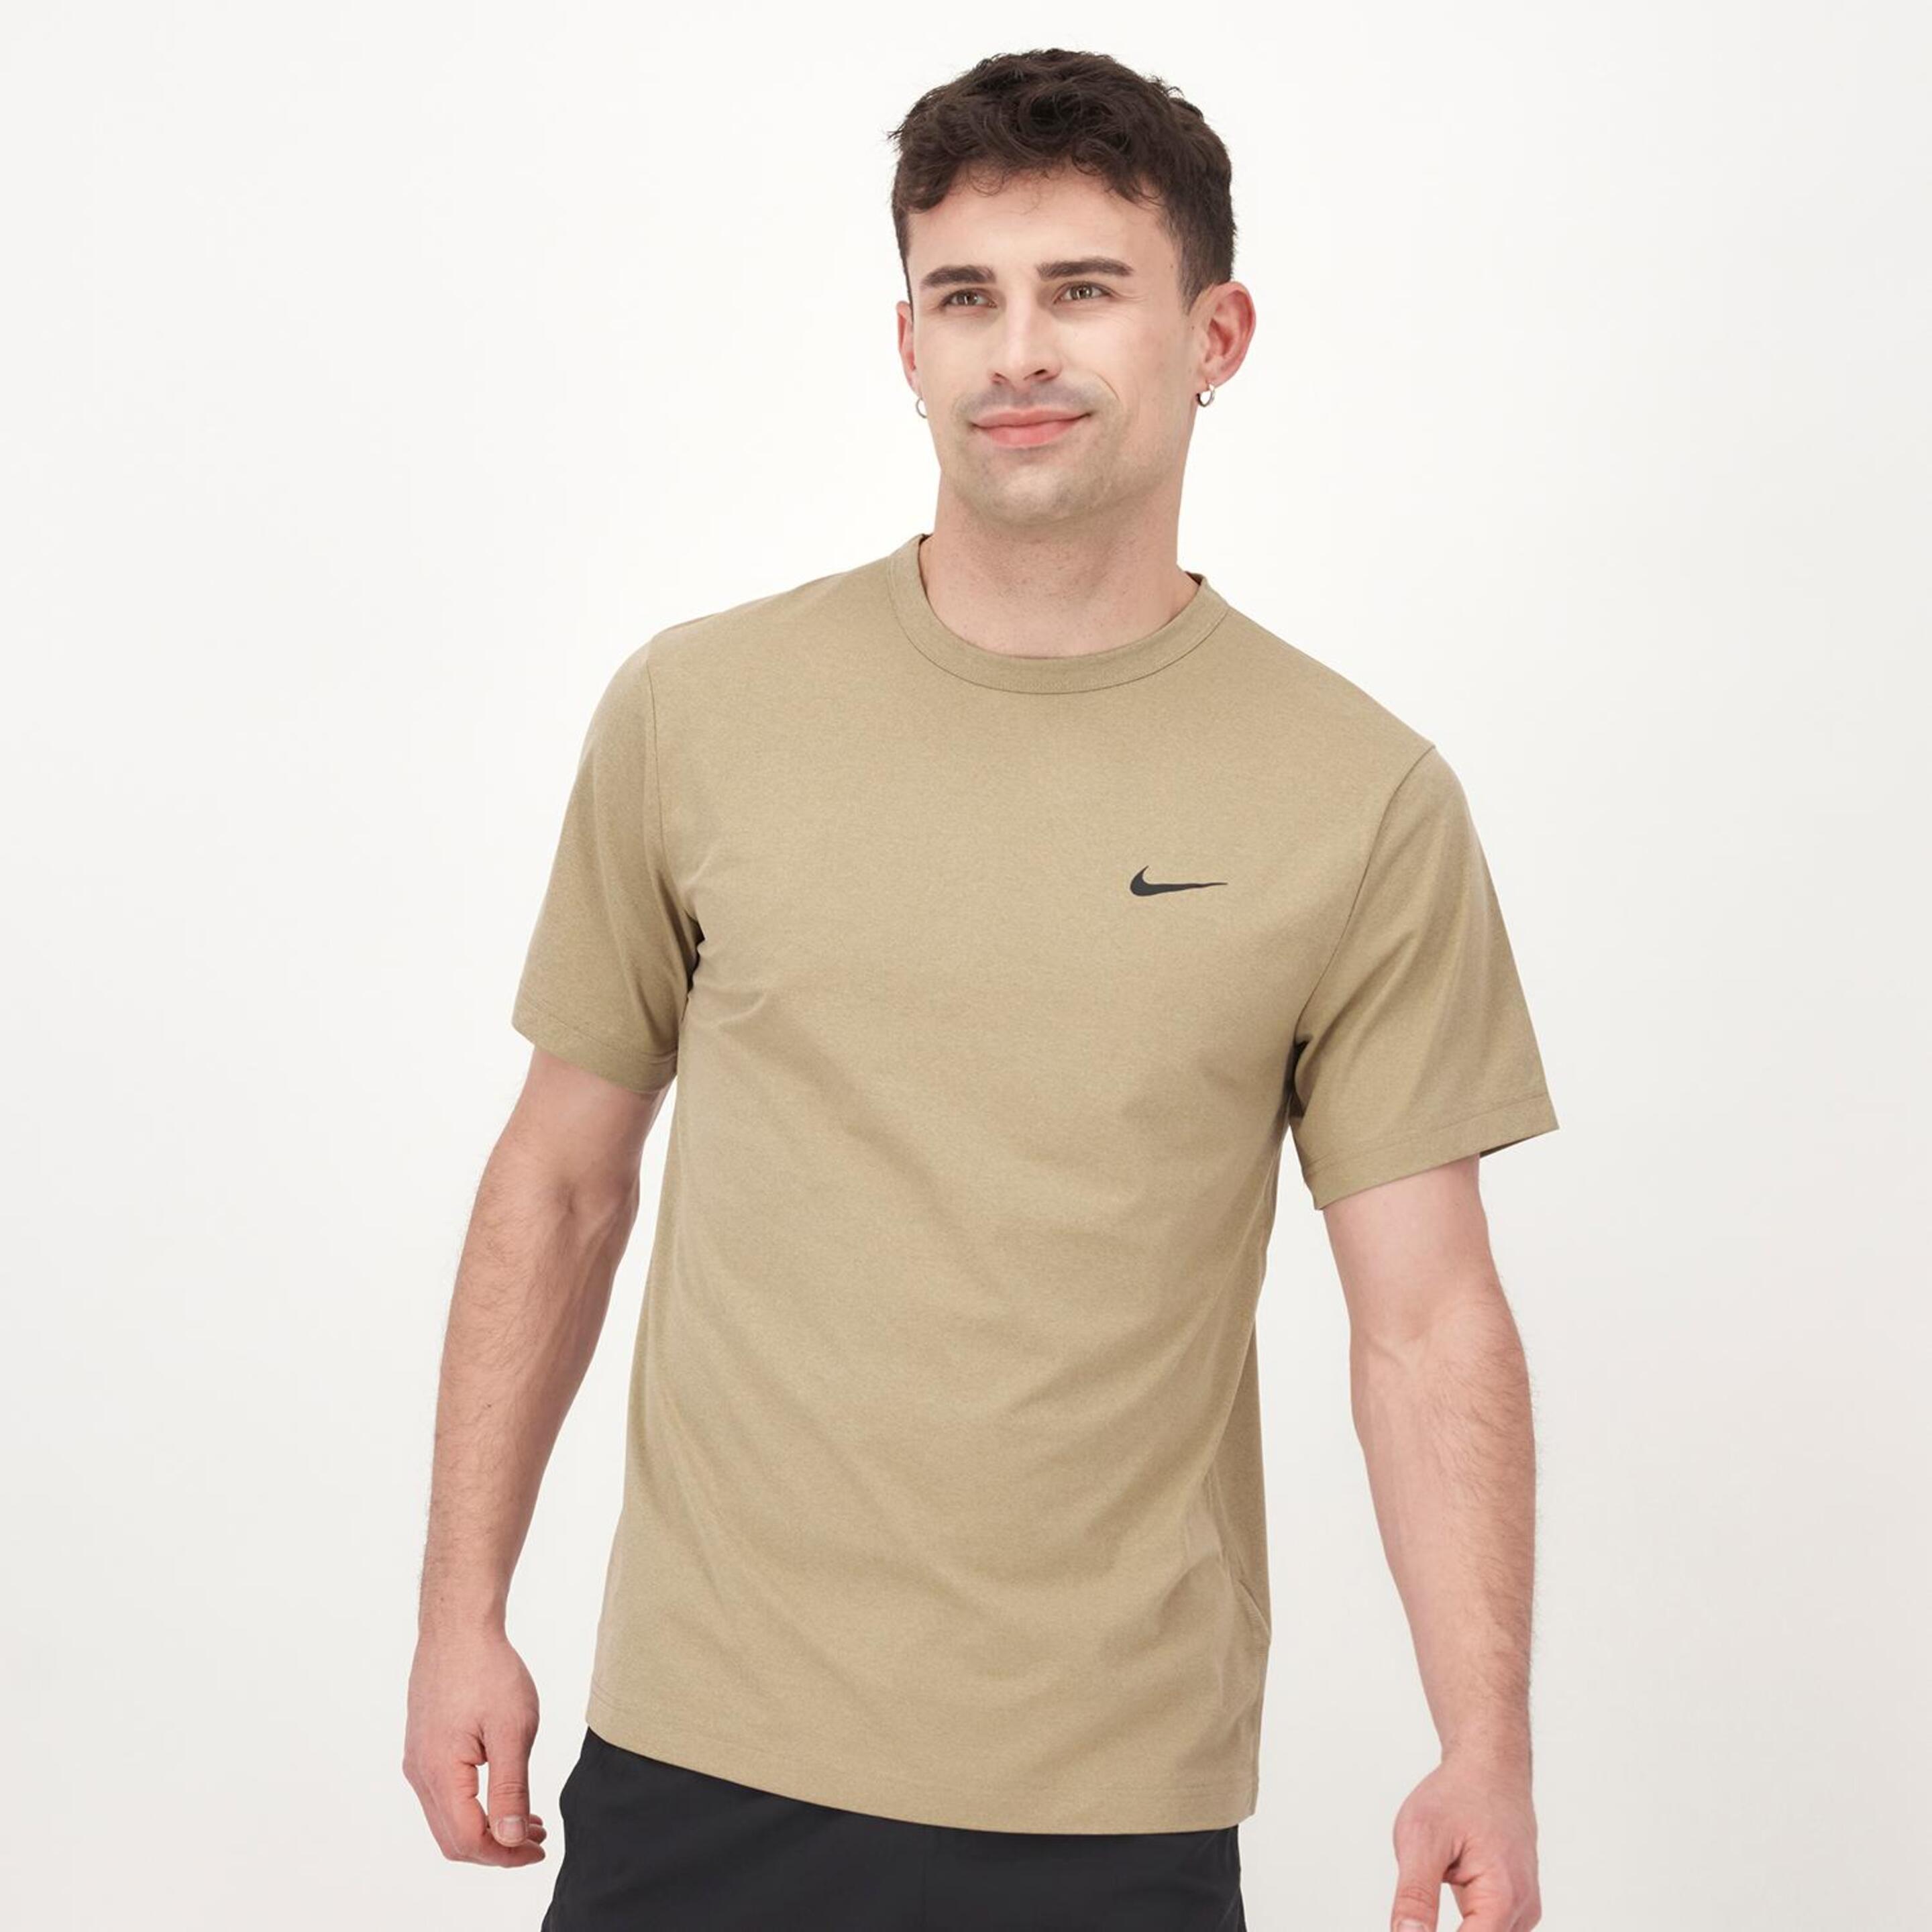 Camiseta Nike - marron - Camiseta Hombre